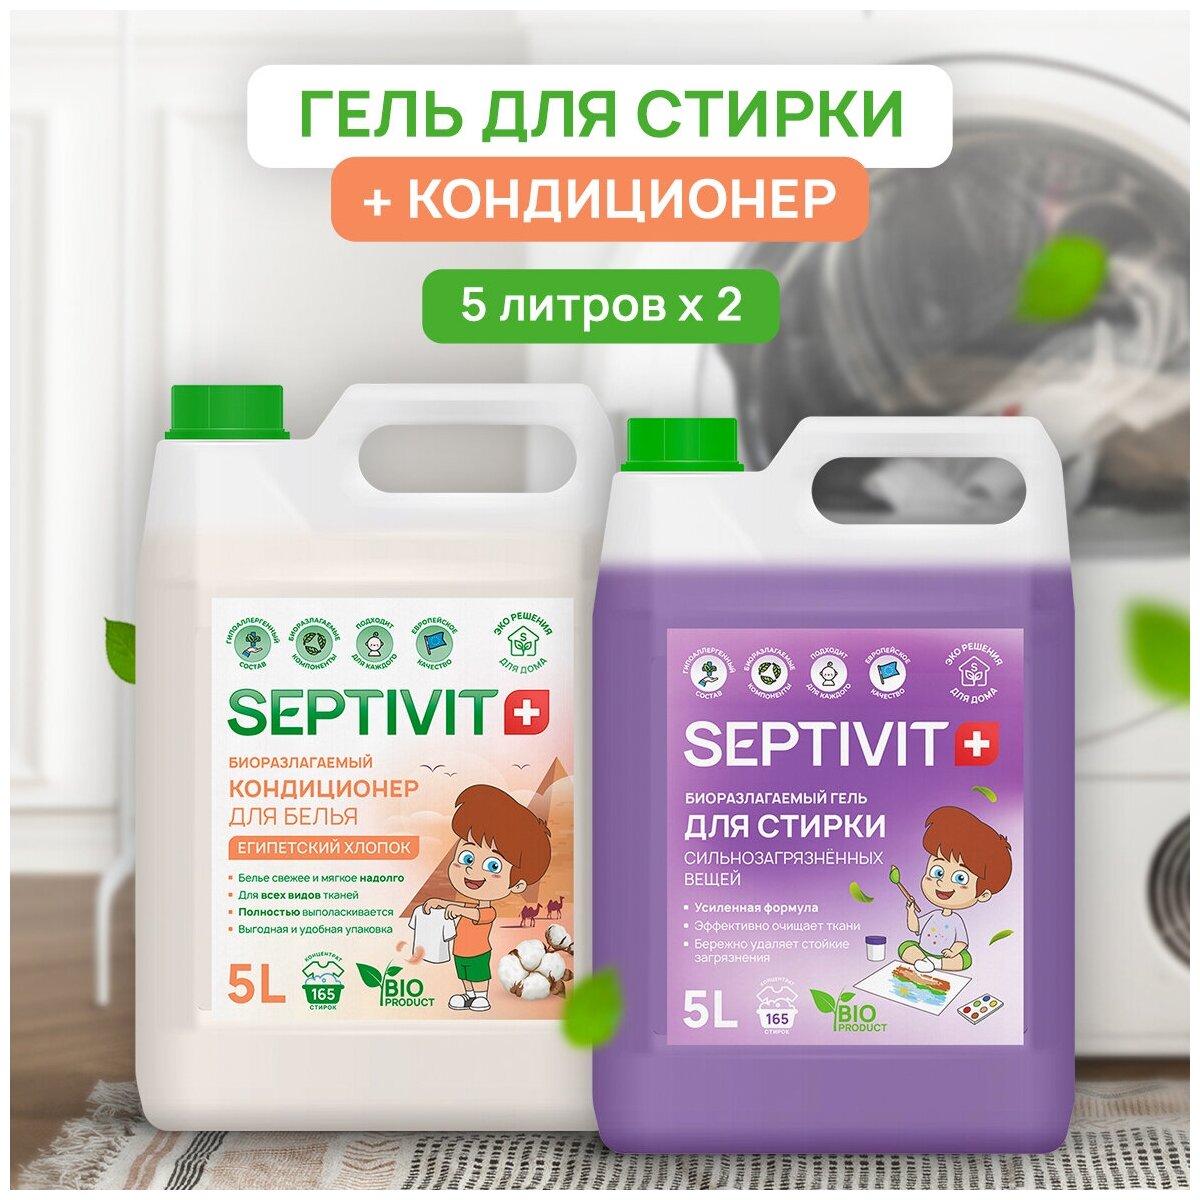 Набор Septivit Premium Гель для стирки Сильнозагрязненных тканей 5л + Кондиционер Египетский хлопок 5л Септивит